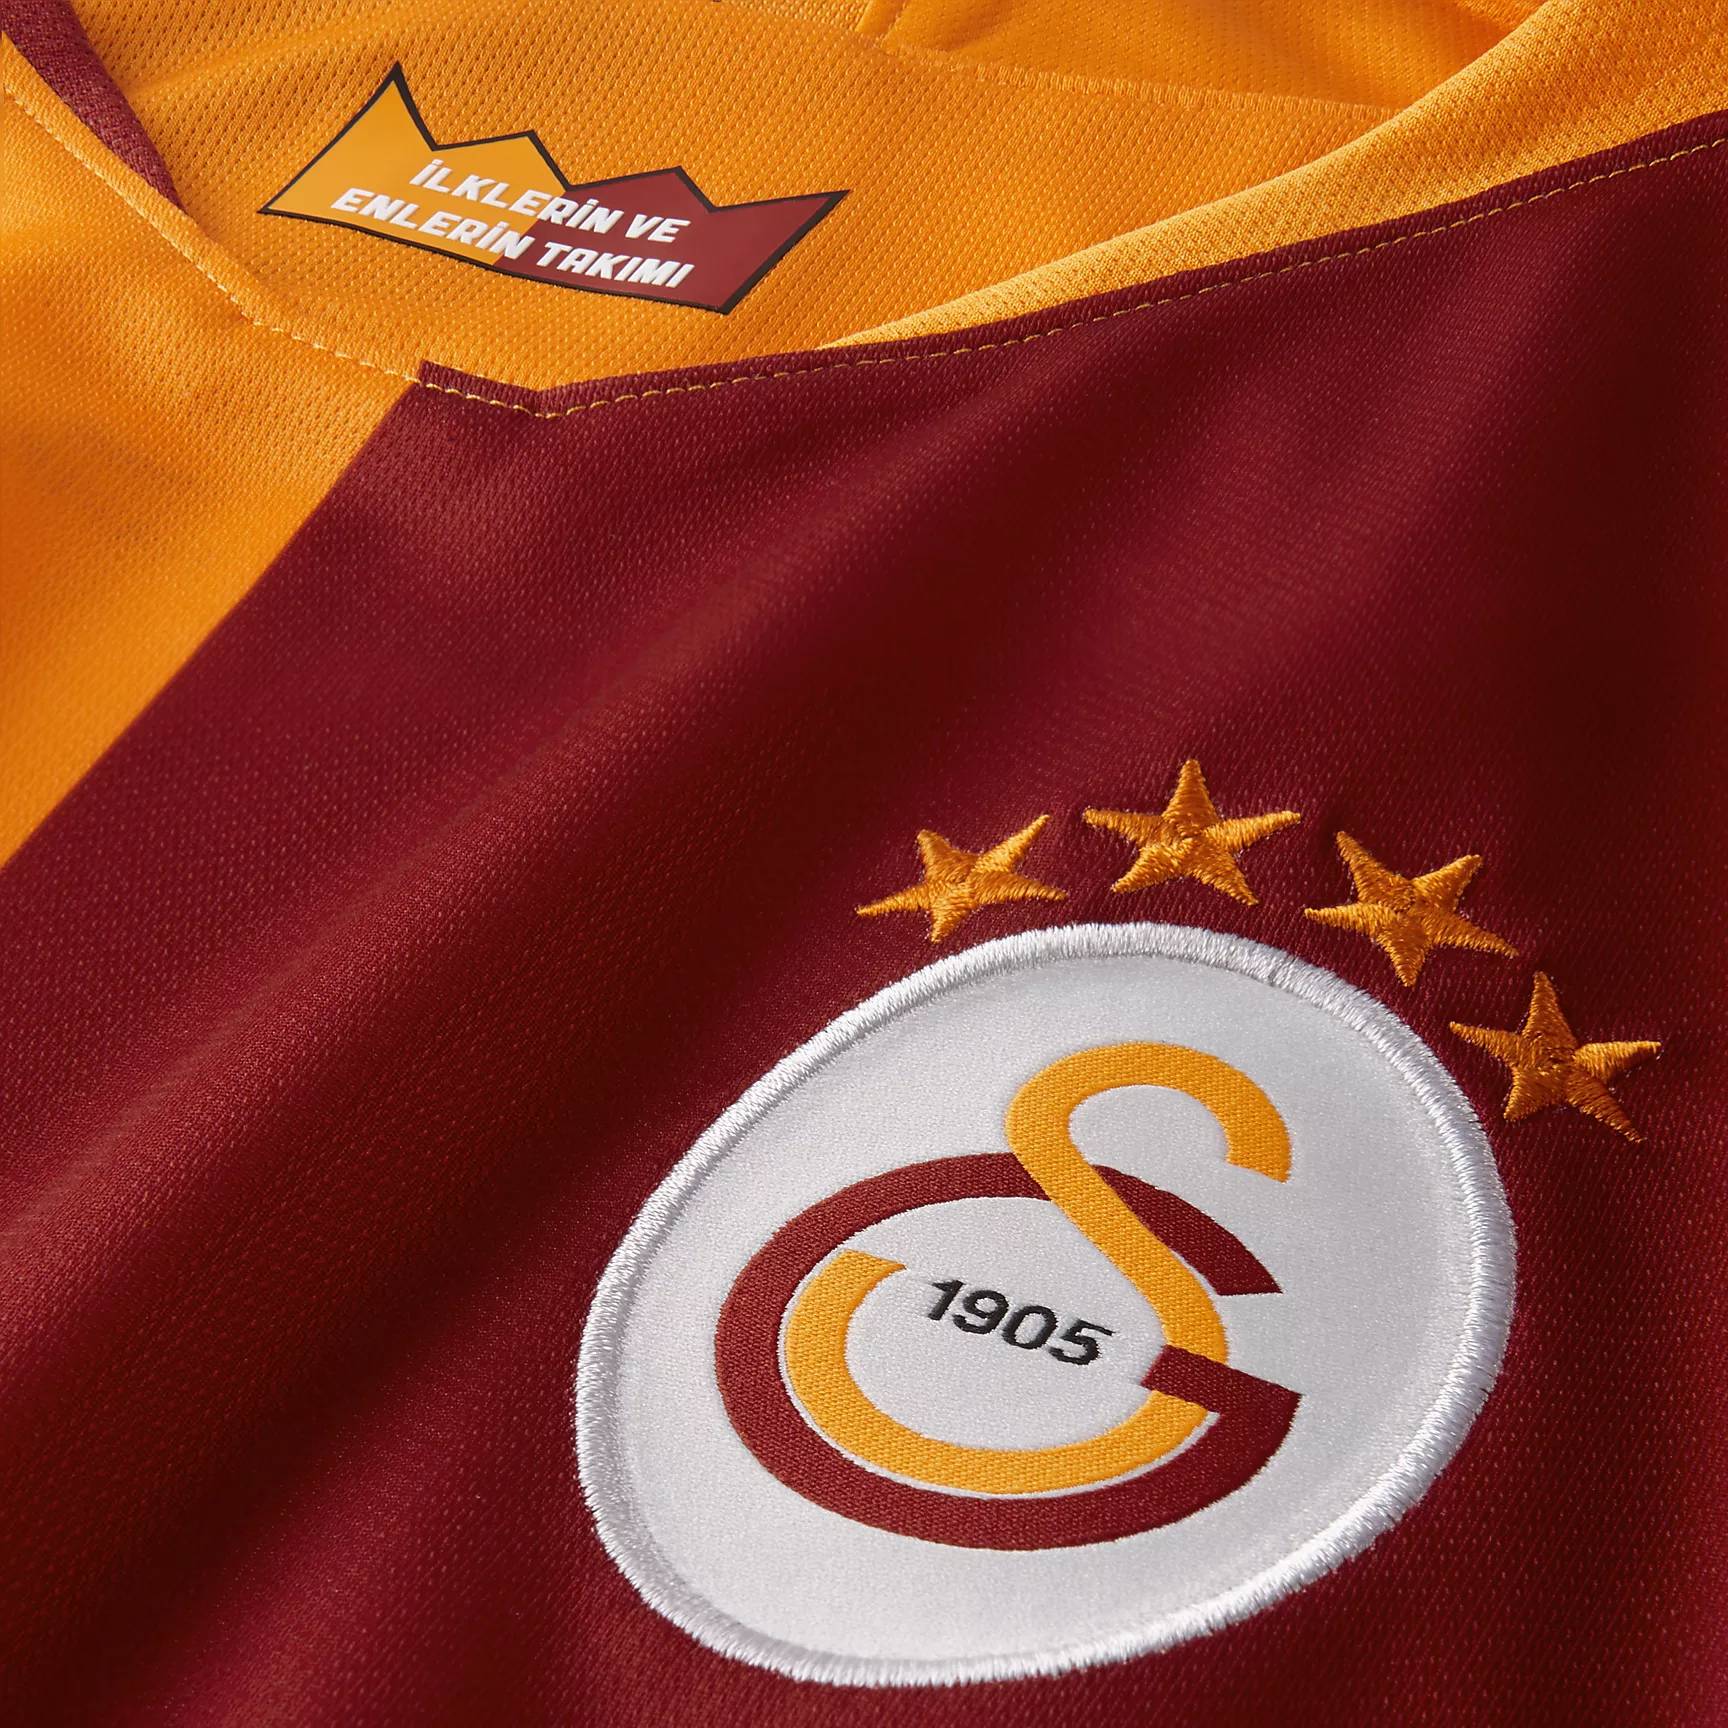 Galatasaray Sport Gear,Galatasaray Soccer Uniforms,Galatasaray Soccer ...